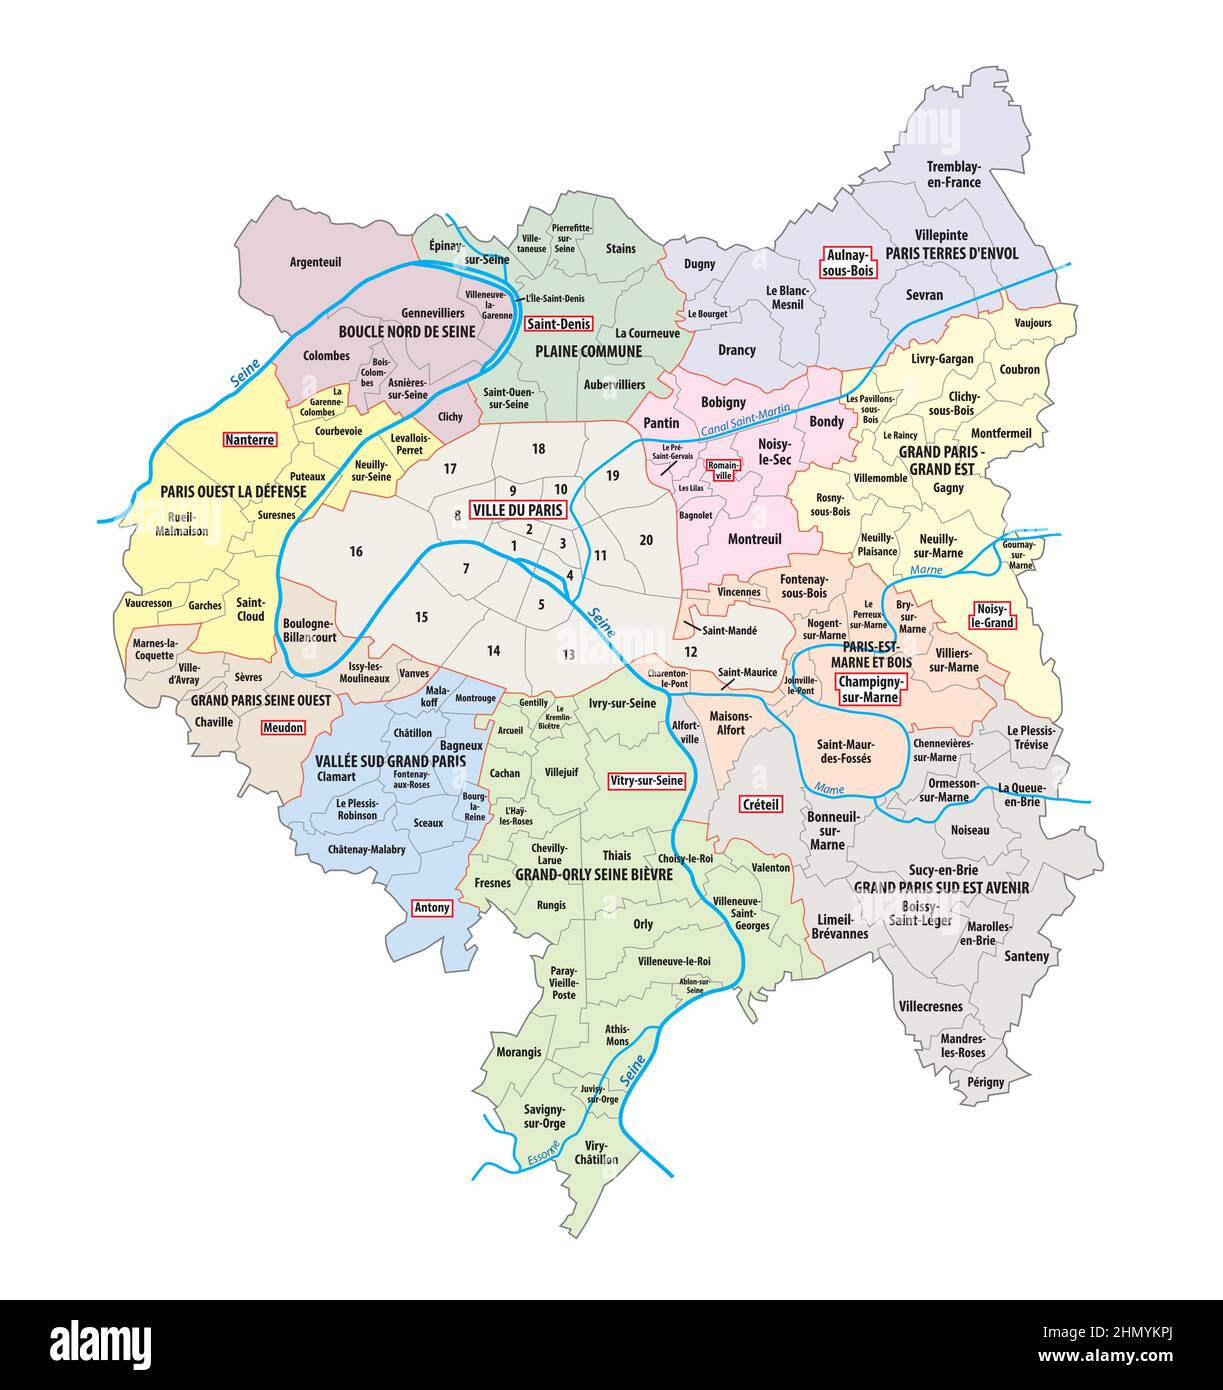 Carte des associations municipales créées en 2016 dans la région métropolitaine du Grand Paris, France Illustration de Vecteur